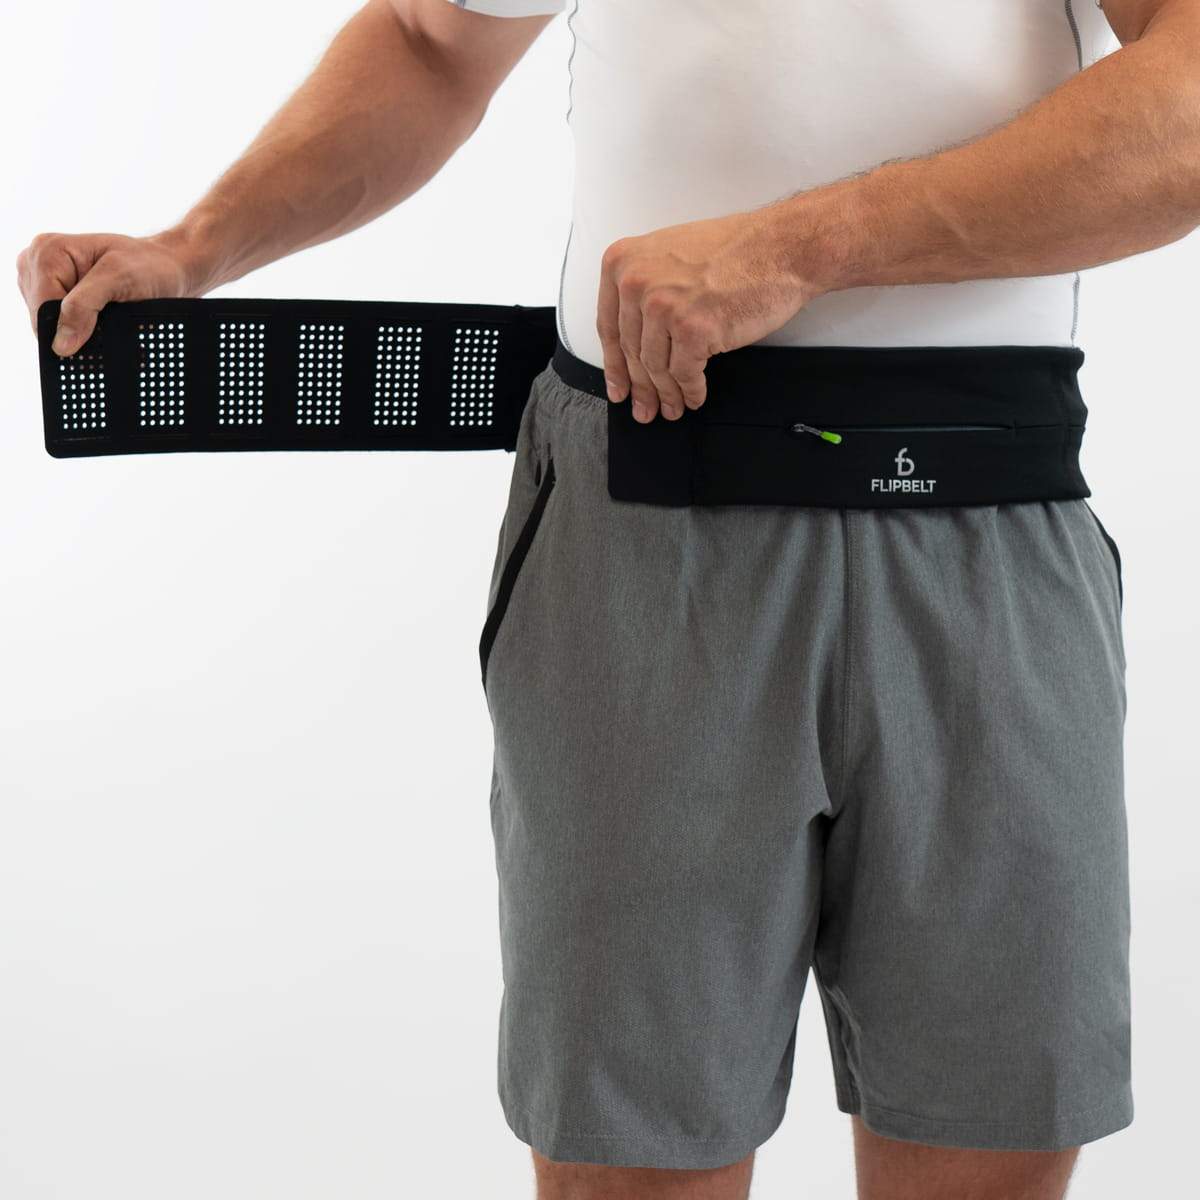 FlipBelt Zipper Adjustable Belt